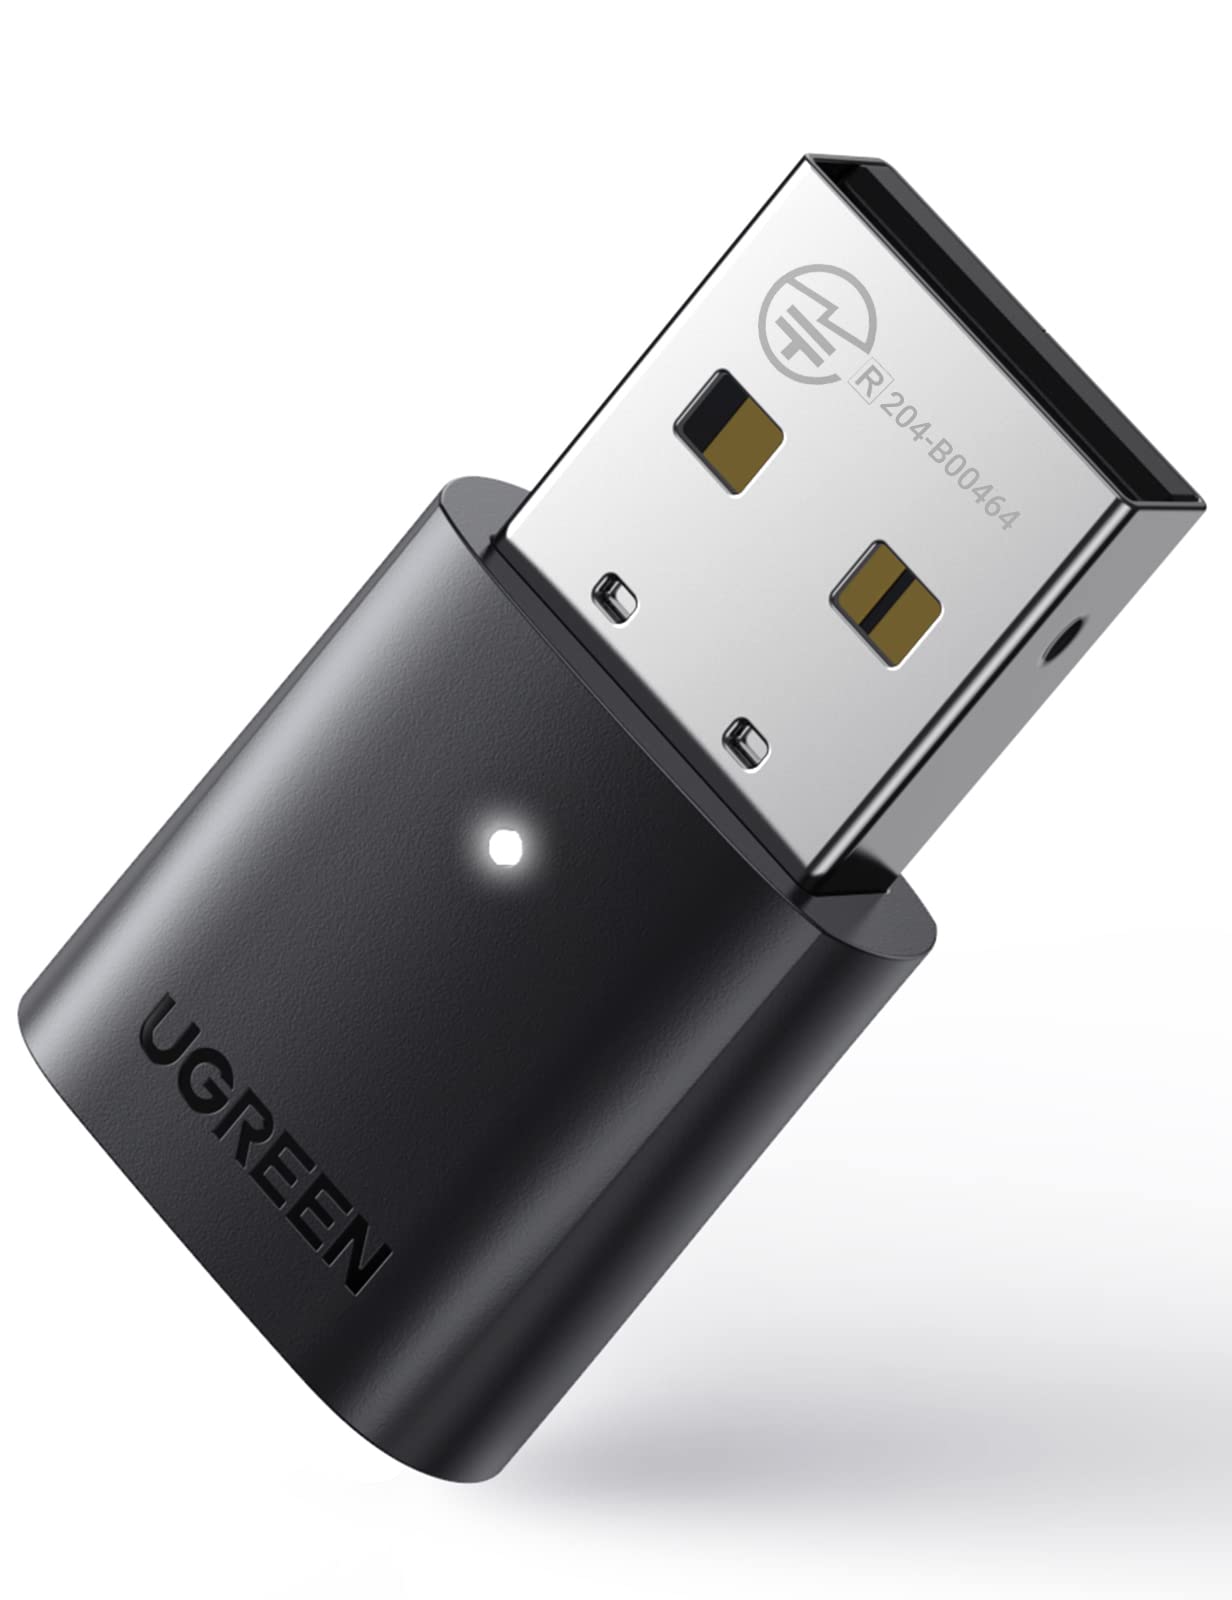 Populaire UGREEN Dongle Bluetooth 5.0 Clé Bluetooth pour PC Adaptateur Carte Bluetooth USB pour Manette de Jeu Casque Écouteur Enceinte Souris Clavier Imprimante Compatible avec Windows 11 10 8.1 7 (Noir) aa1gK9hDf bien vendre